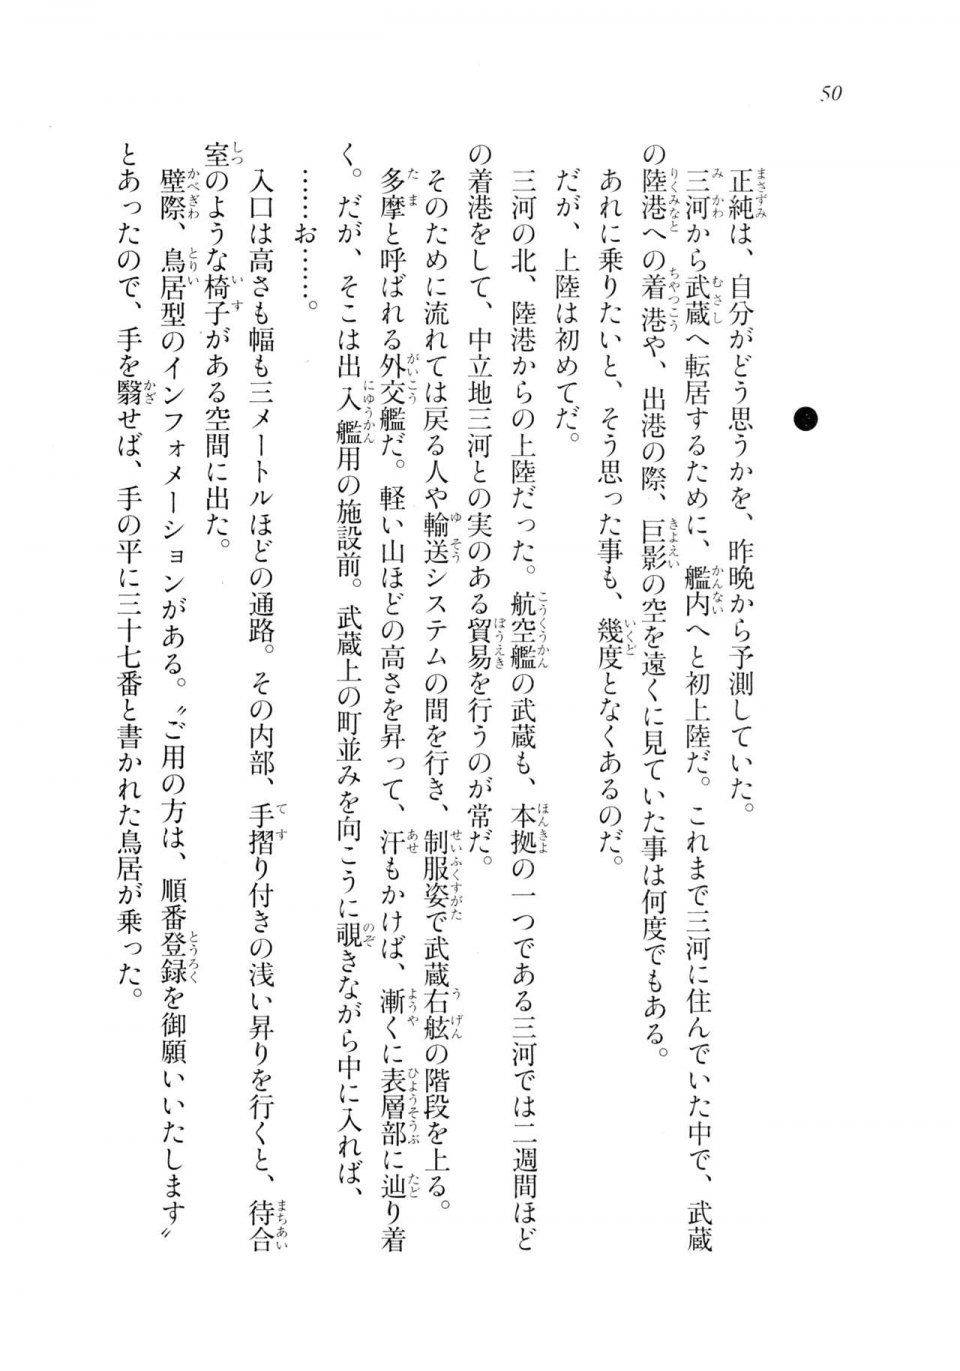 Kyoukai Senjou no Horizon LN Sidestory Vol 2 - Photo #48